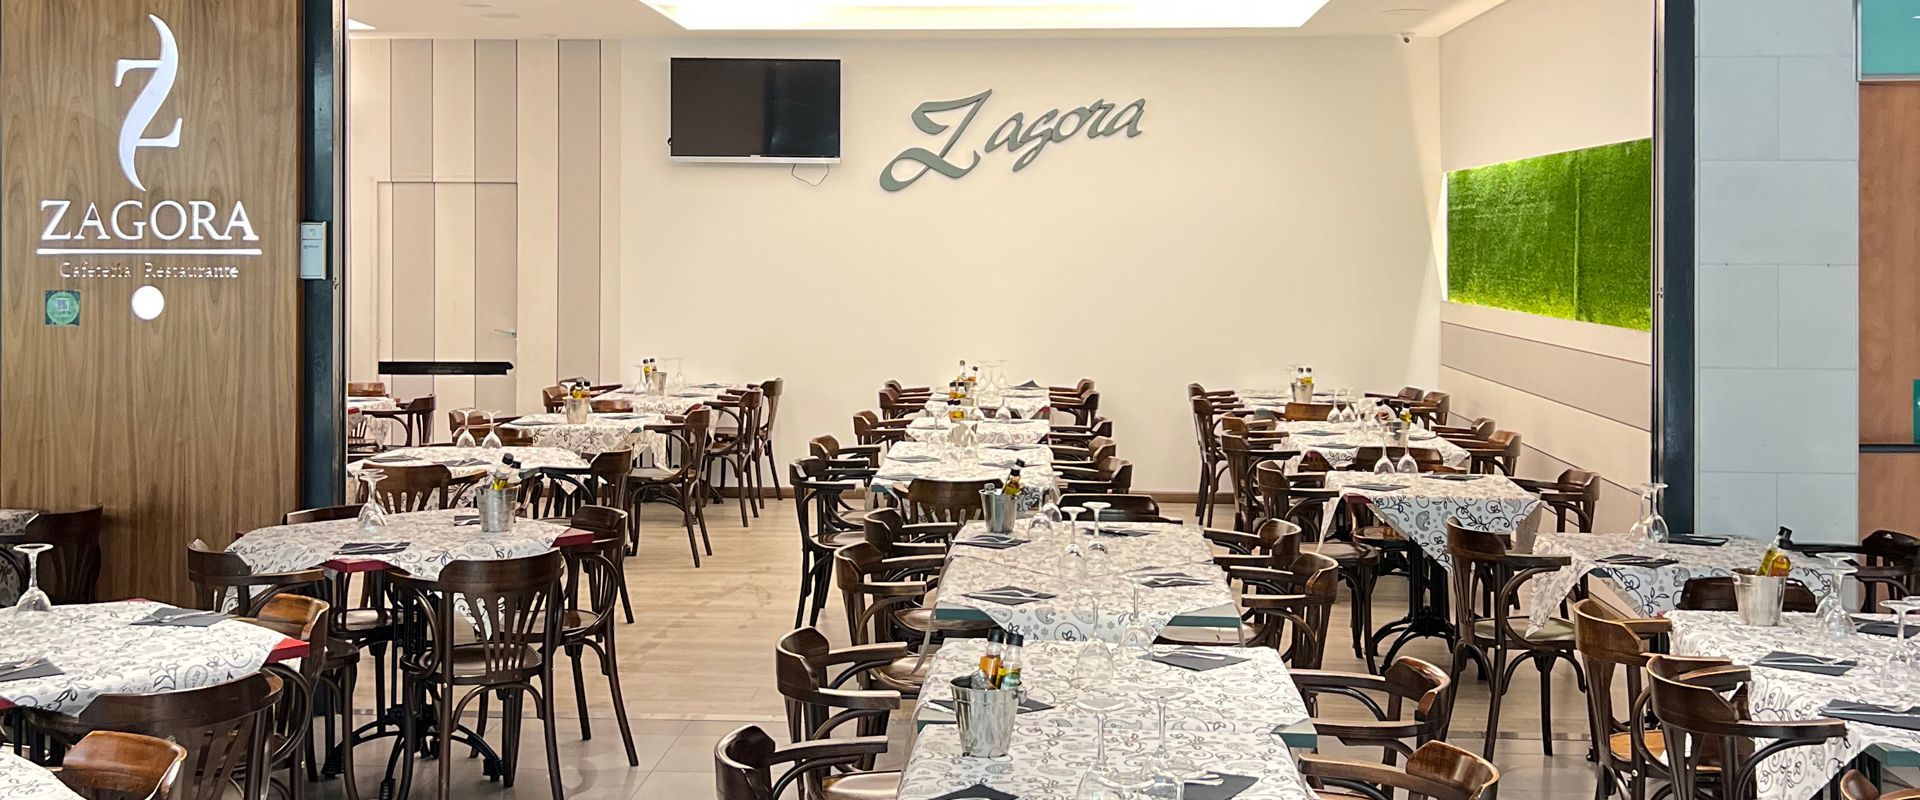 Restaurantes de comida tradicional en Zaragoza